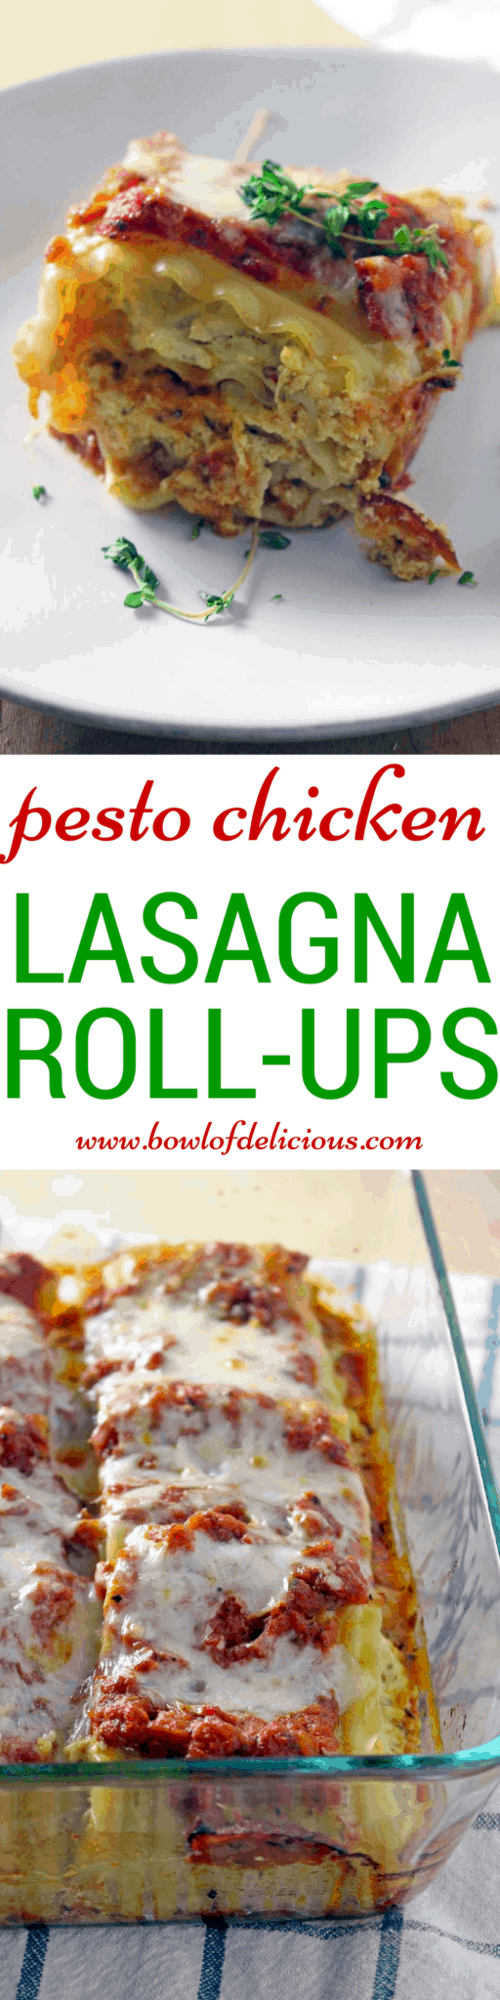 pesto chicken lasagna roll ups